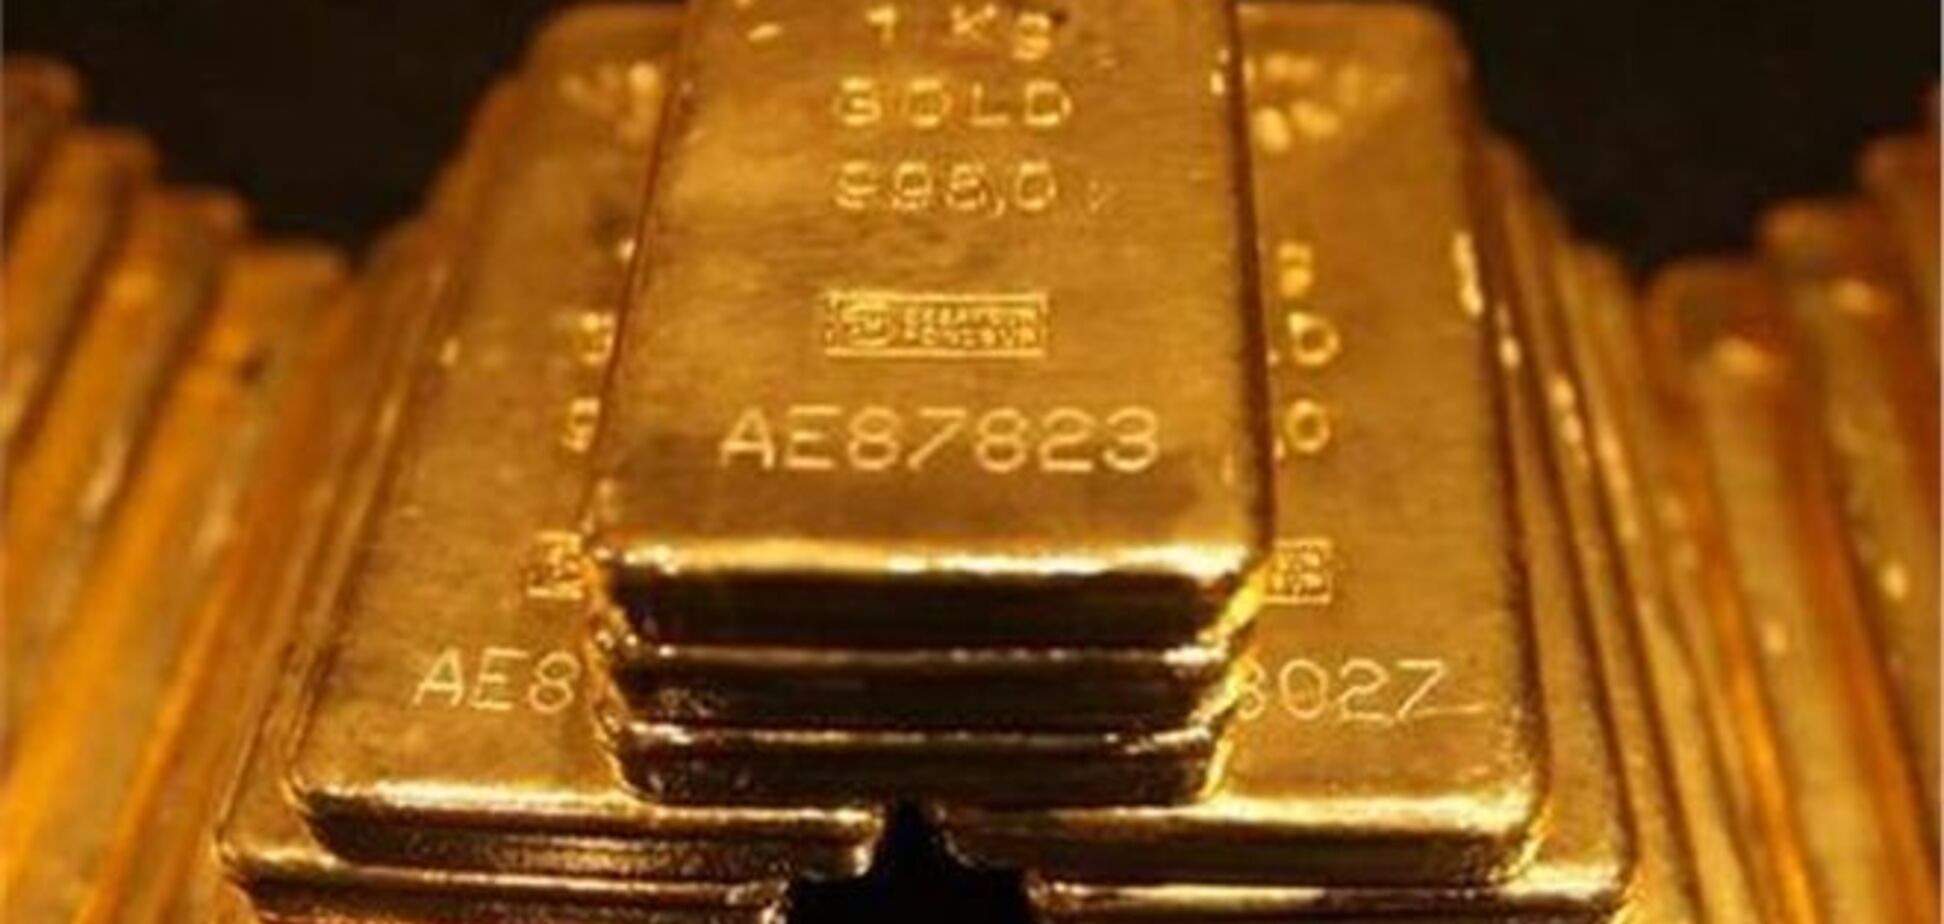 Цены на золото могут взлететь из-за военных событий в Сирии, - эксперт